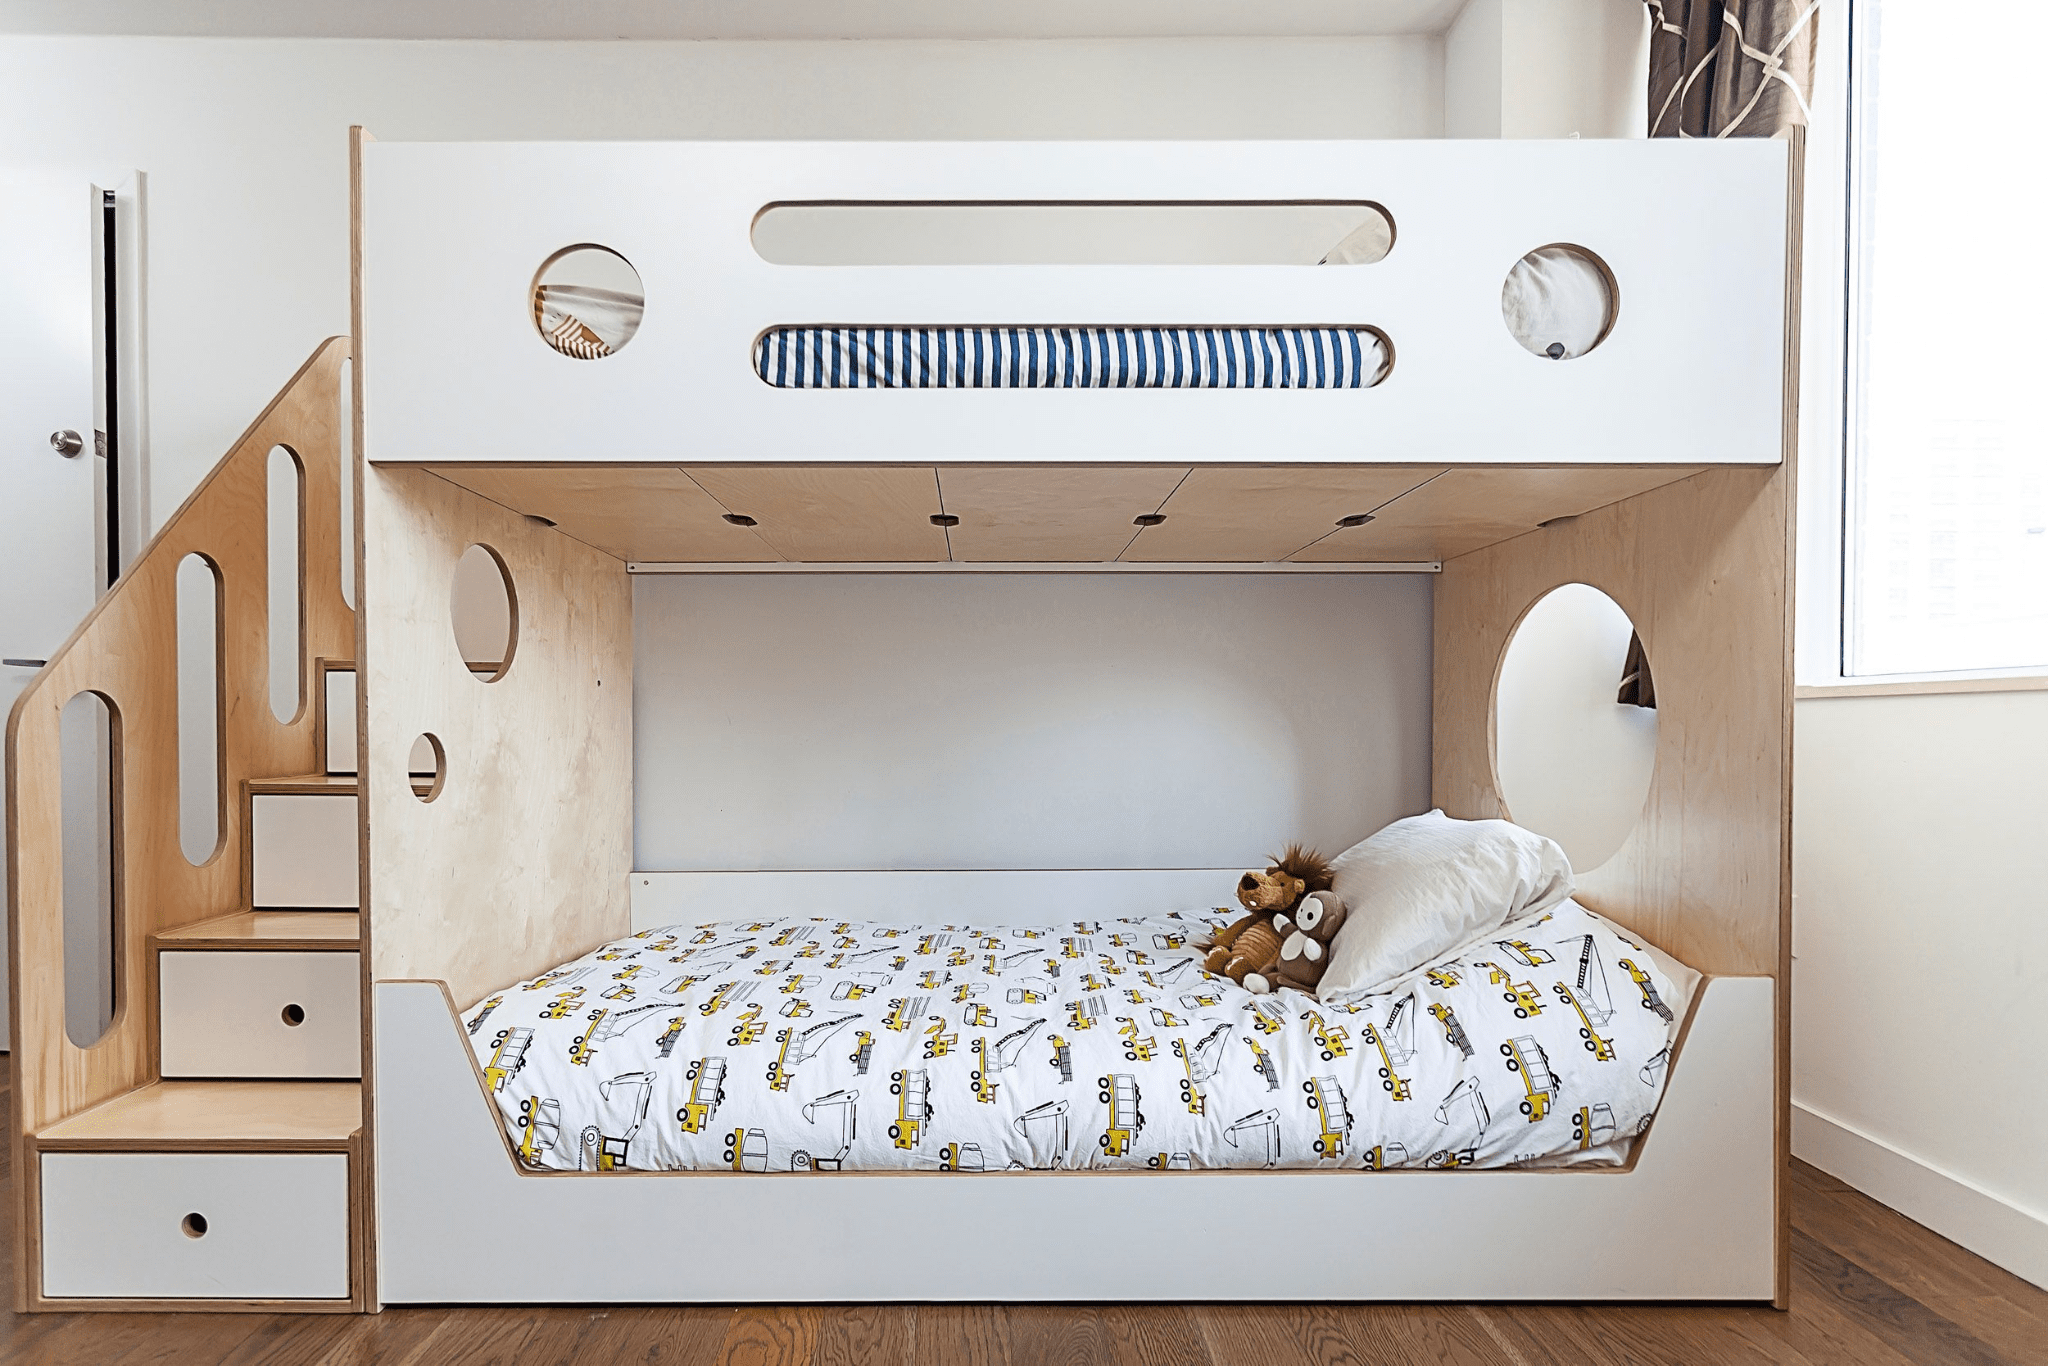 Chiếc giường tầng cho bé có thiết kế dạng băng cassette